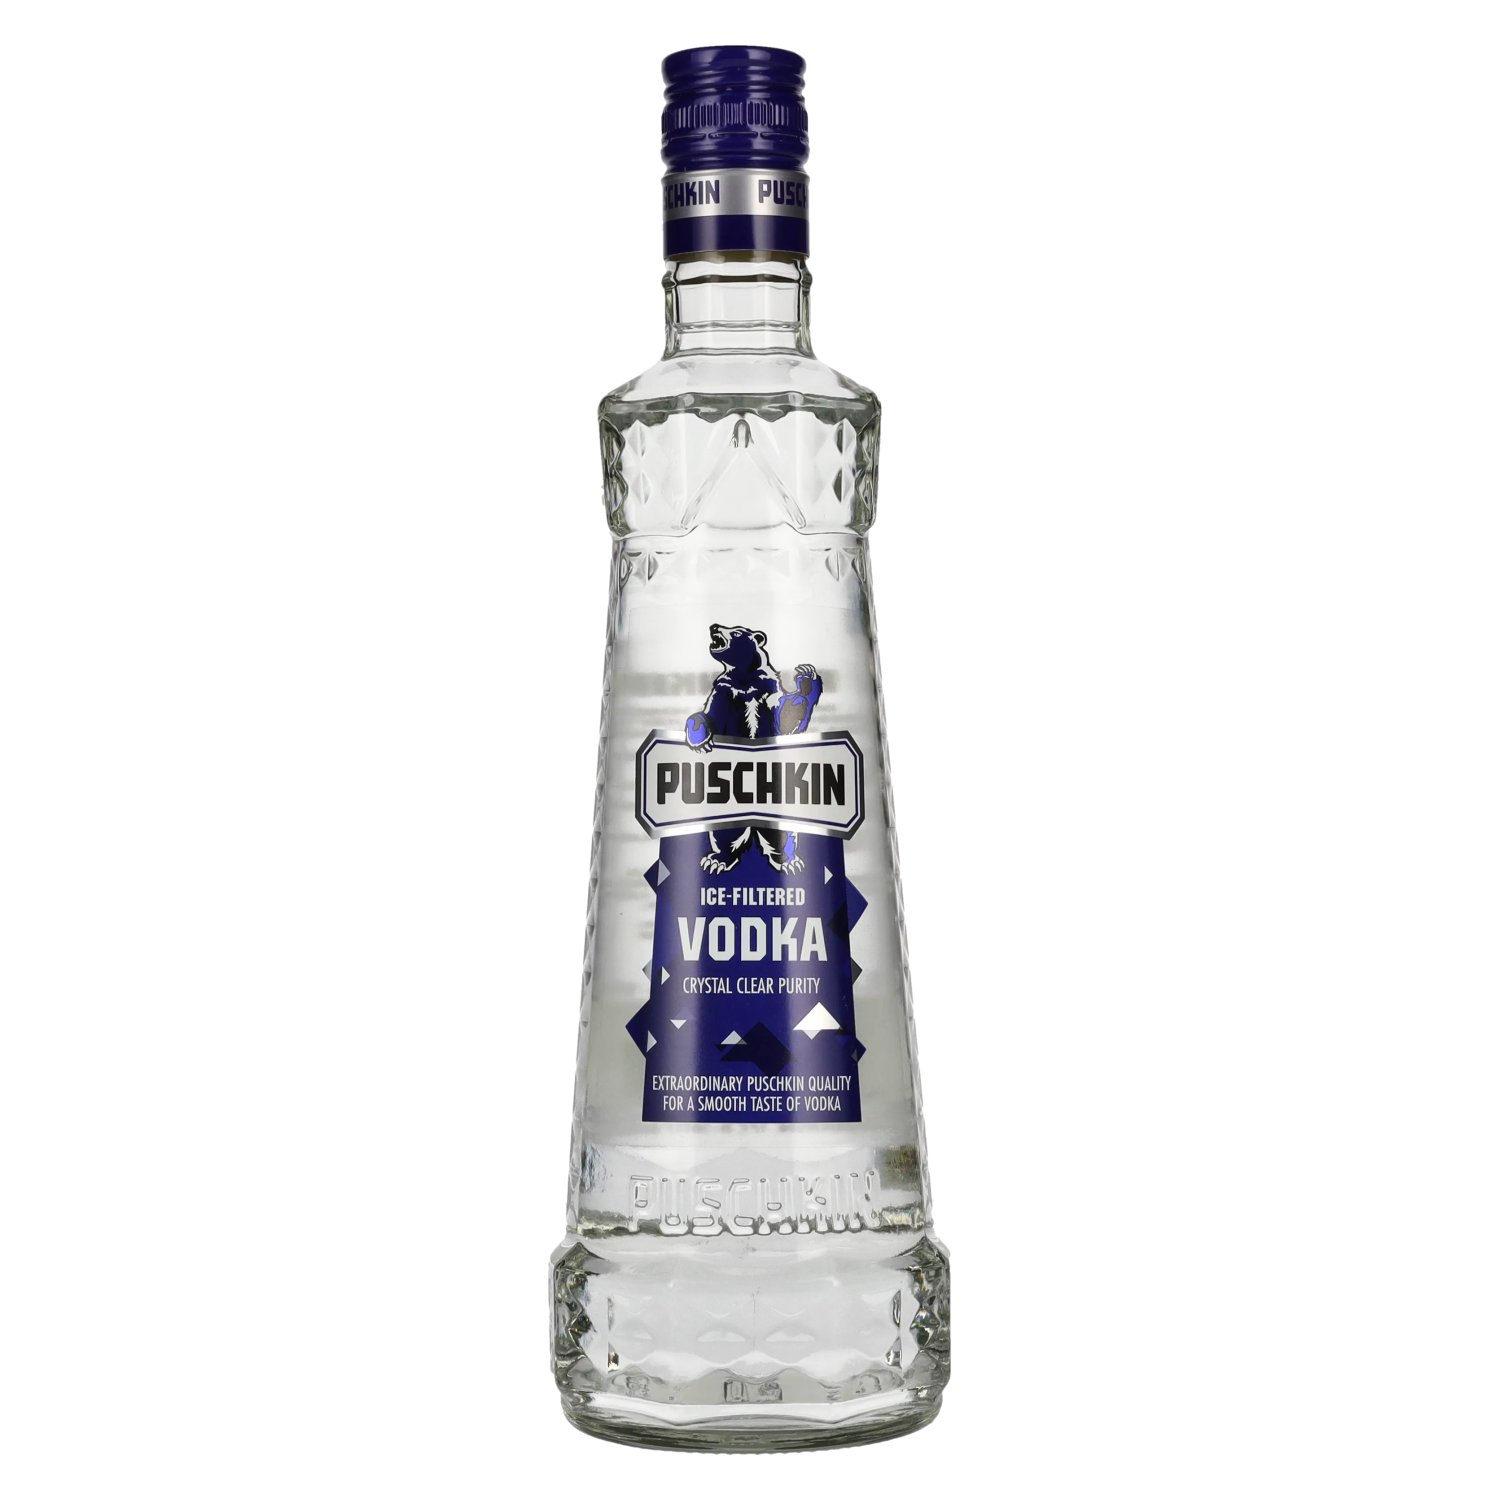 Puschkin Ice-Filtered Vodka 37,5% Vol. 0,7l delicando 